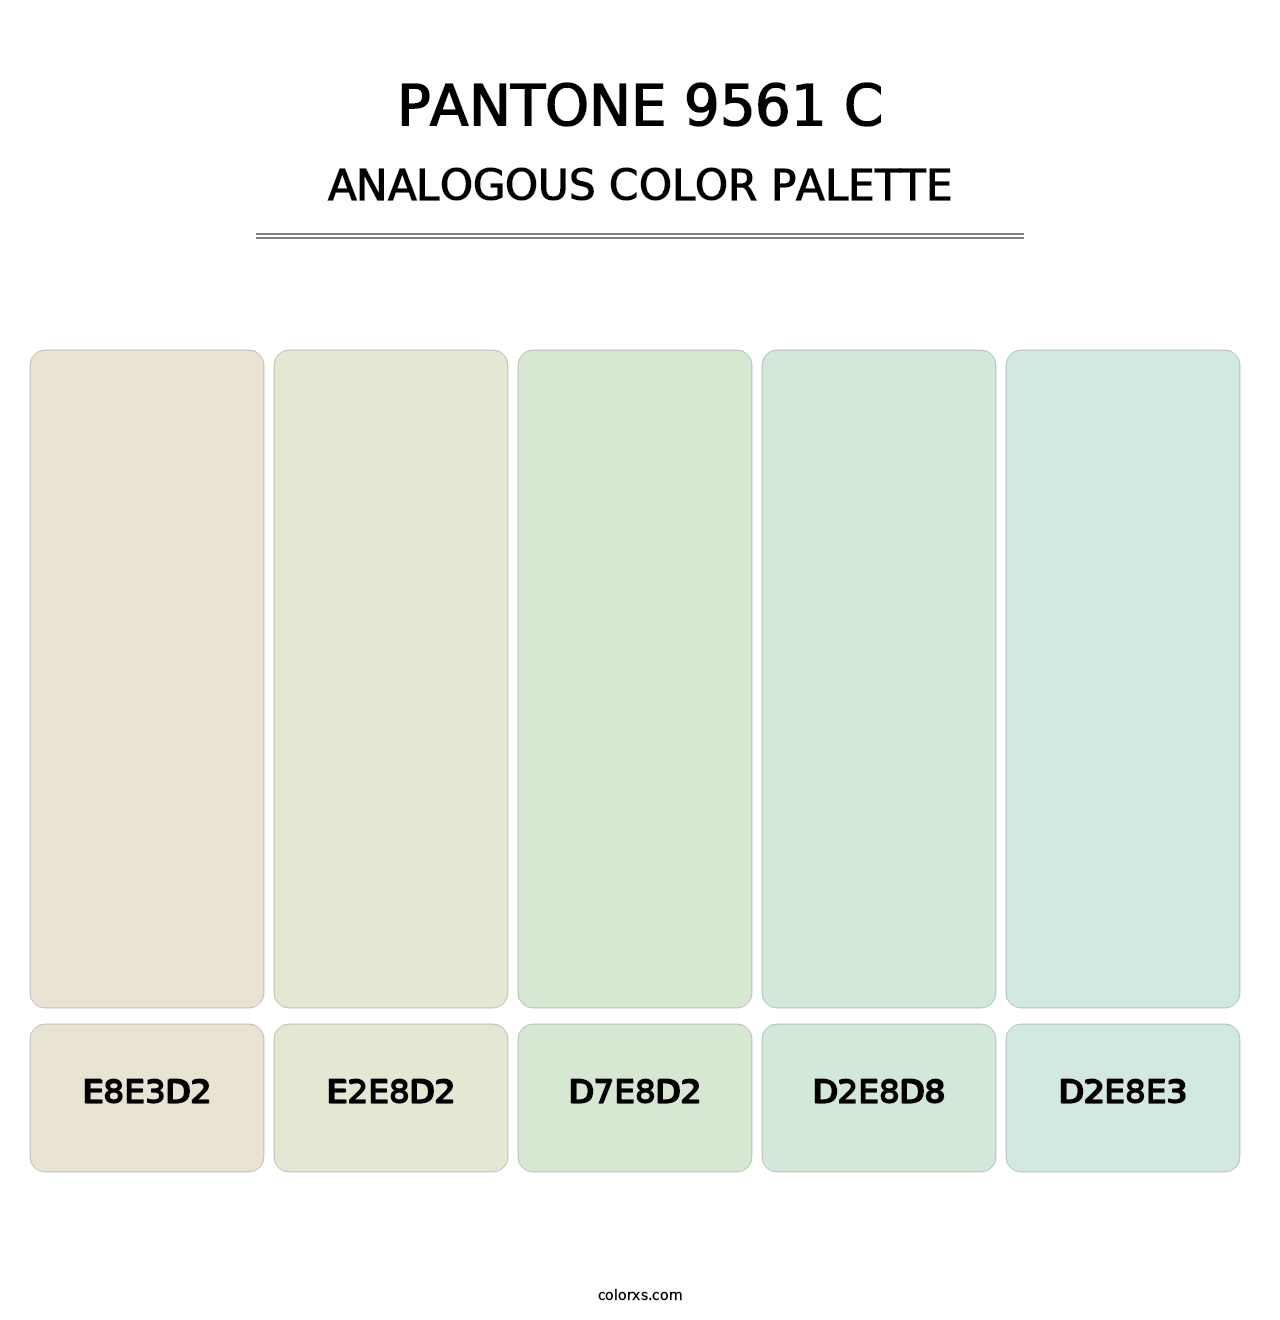 PANTONE 9561 C - Analogous Color Palette